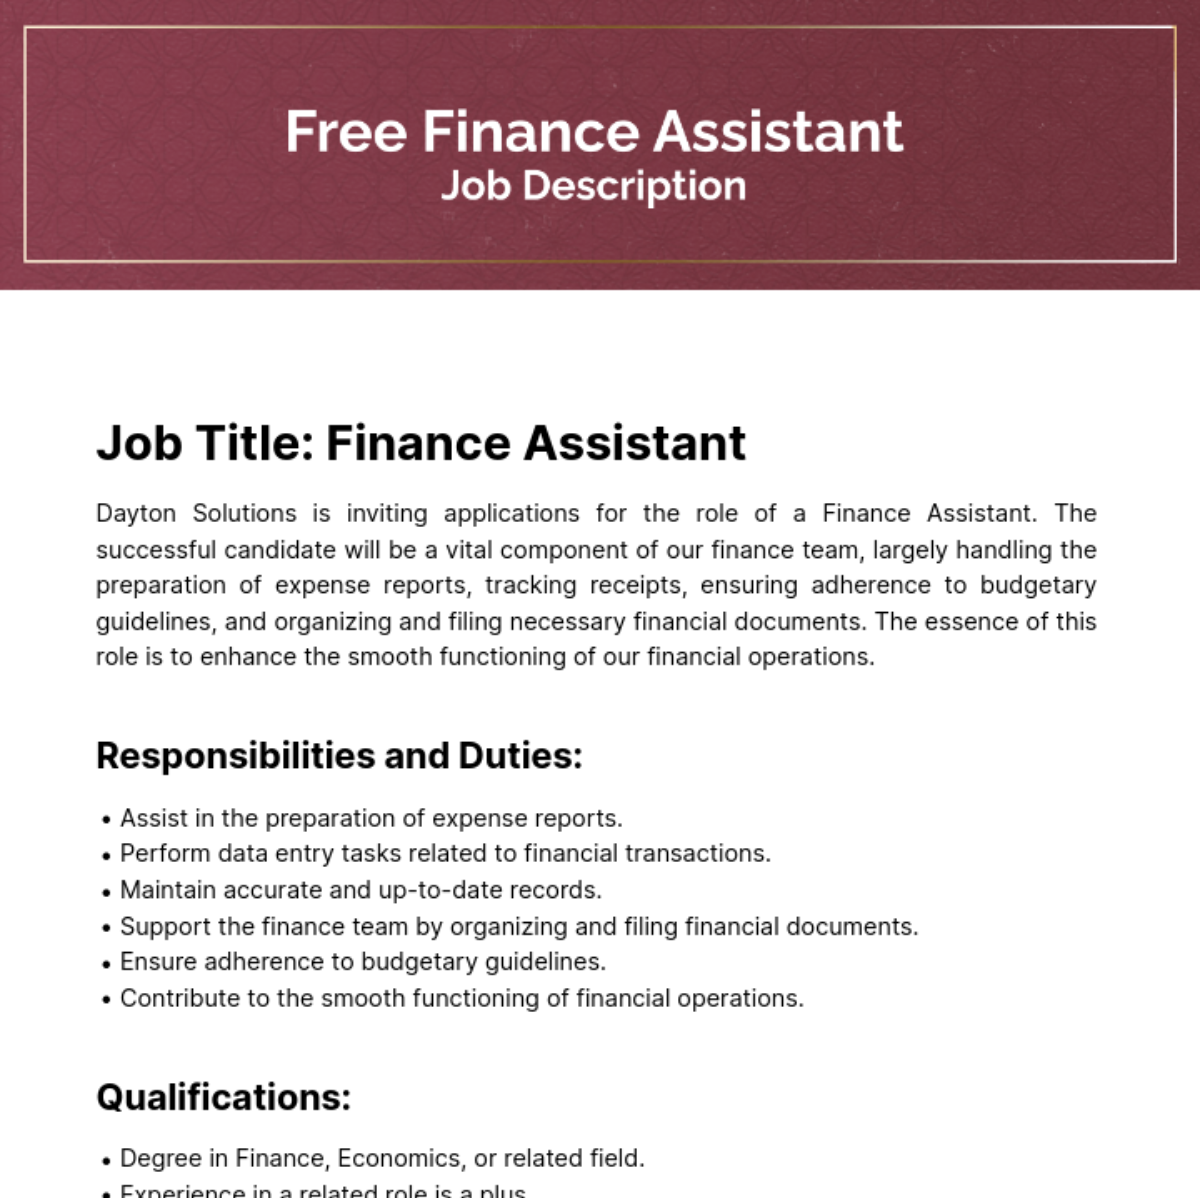 Finance Assistant Job Description Template